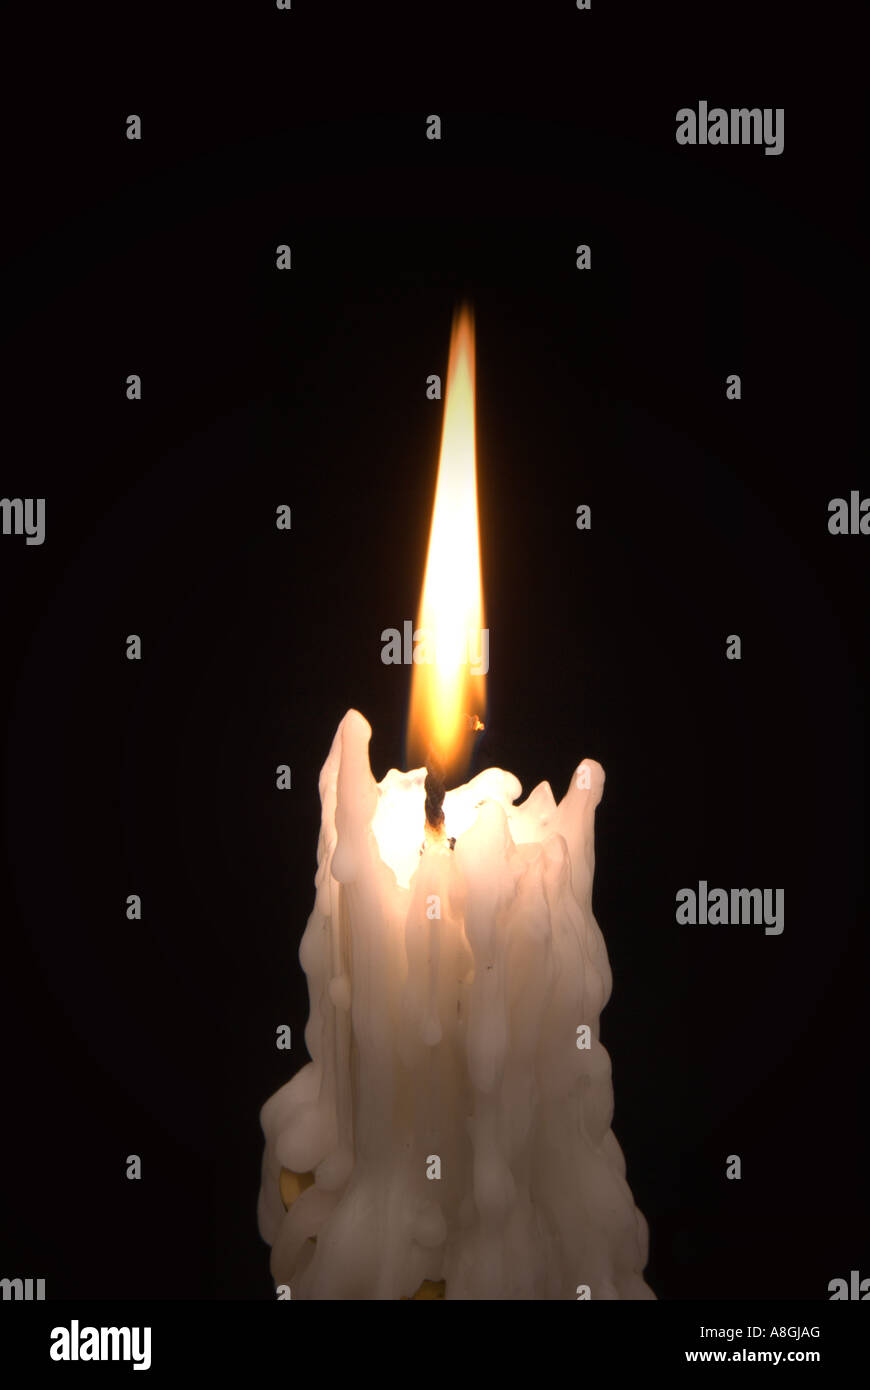 Candle burning against black background. Stock Photo